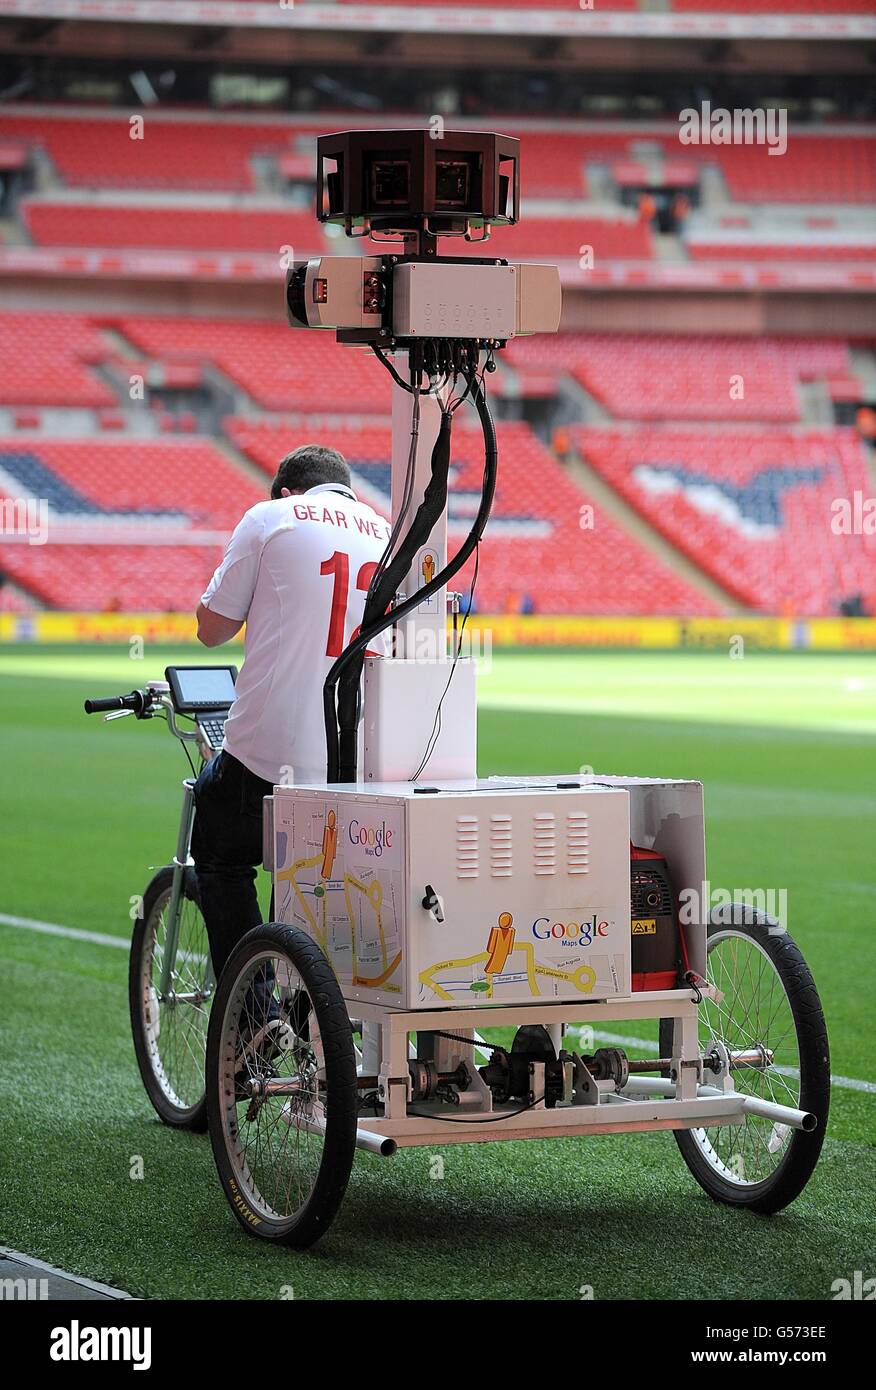 Calcio - Internazionale amichevole - Inghilterra / Belgio - Stadio di Wembley. La bici di Google Street View scatta le foto intorno al Wembley Stadium prima della partita Foto Stock